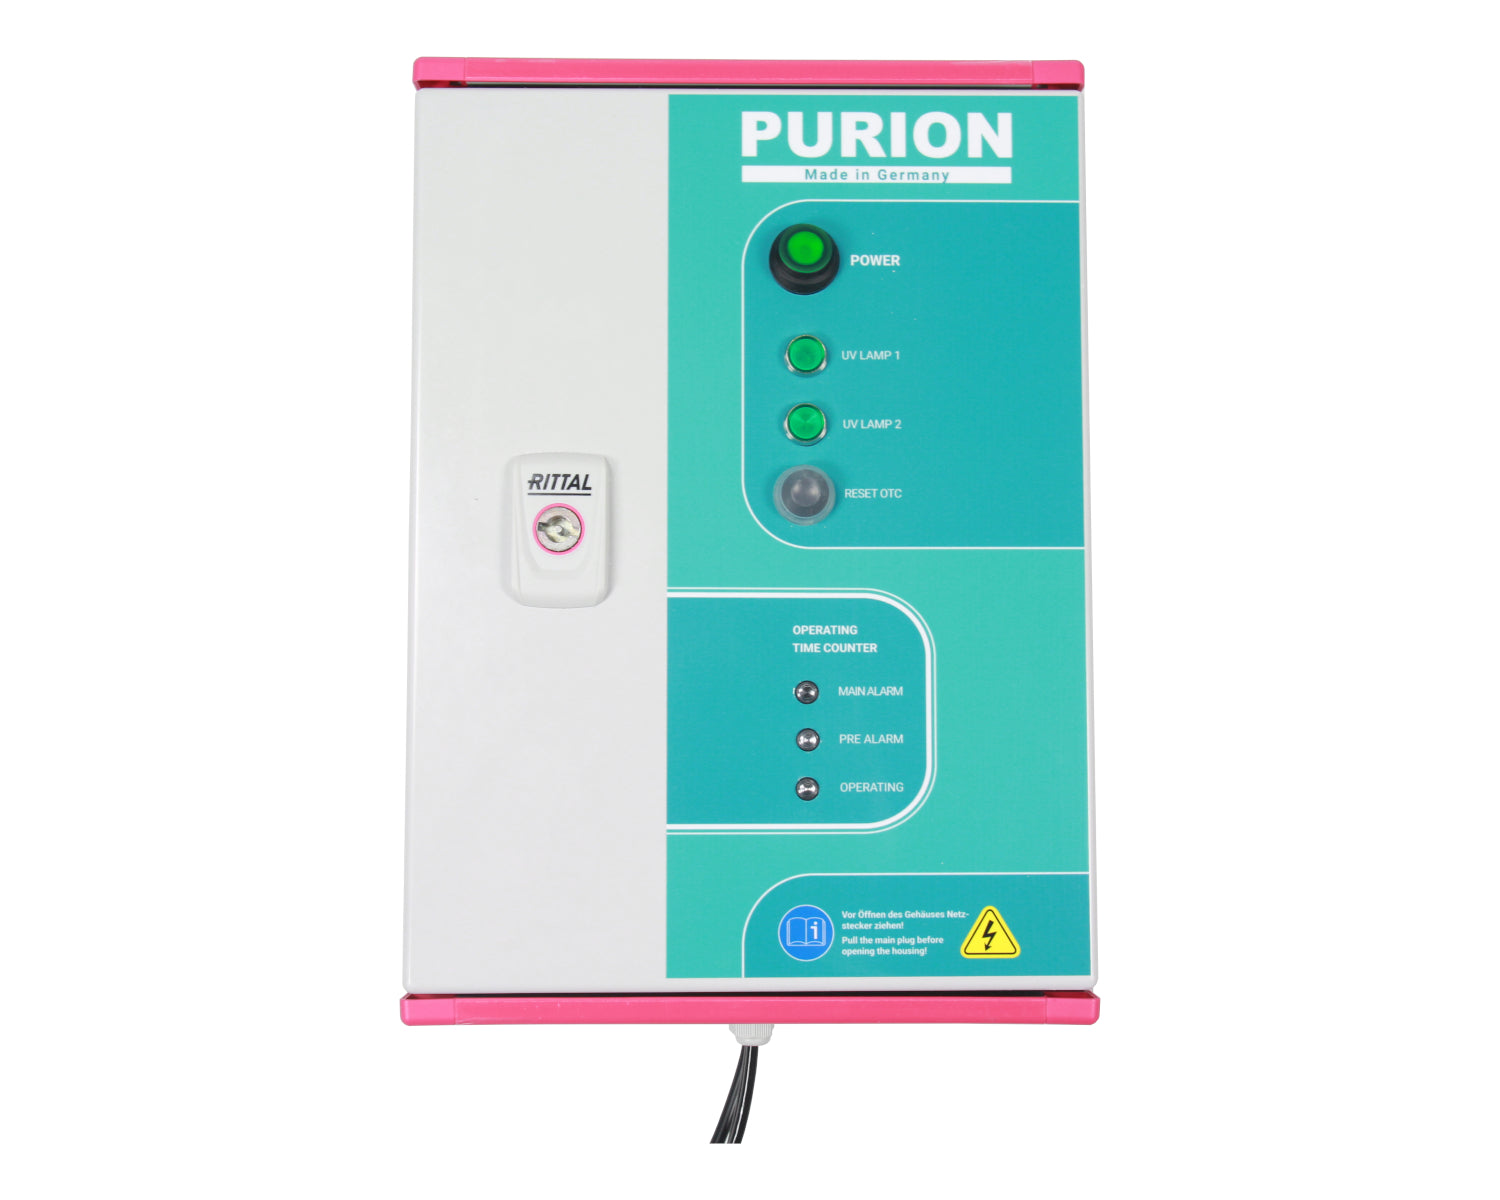 Der PURION 2501 DUAL PVC-U OTC Plus, hergestellt von der PURION GmbH, nutzt die UV-C-Desinfektionstechnologie, um Wasser, einschließlich Salzwasser, effektiv zu desinfizieren.